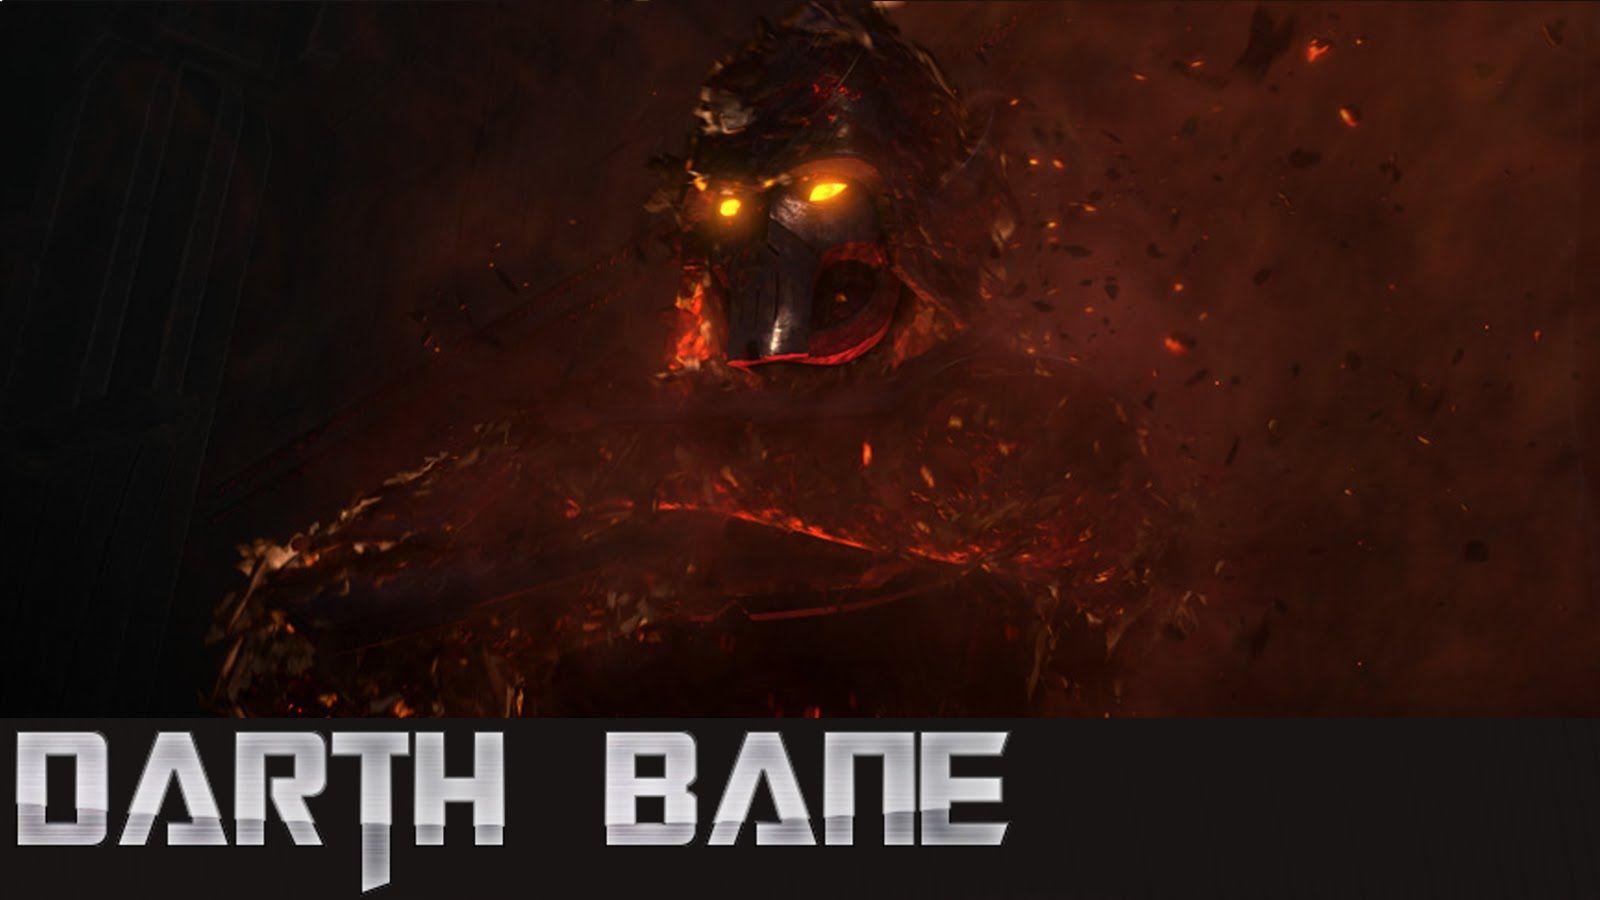 Star Wars lore: Darth Bane